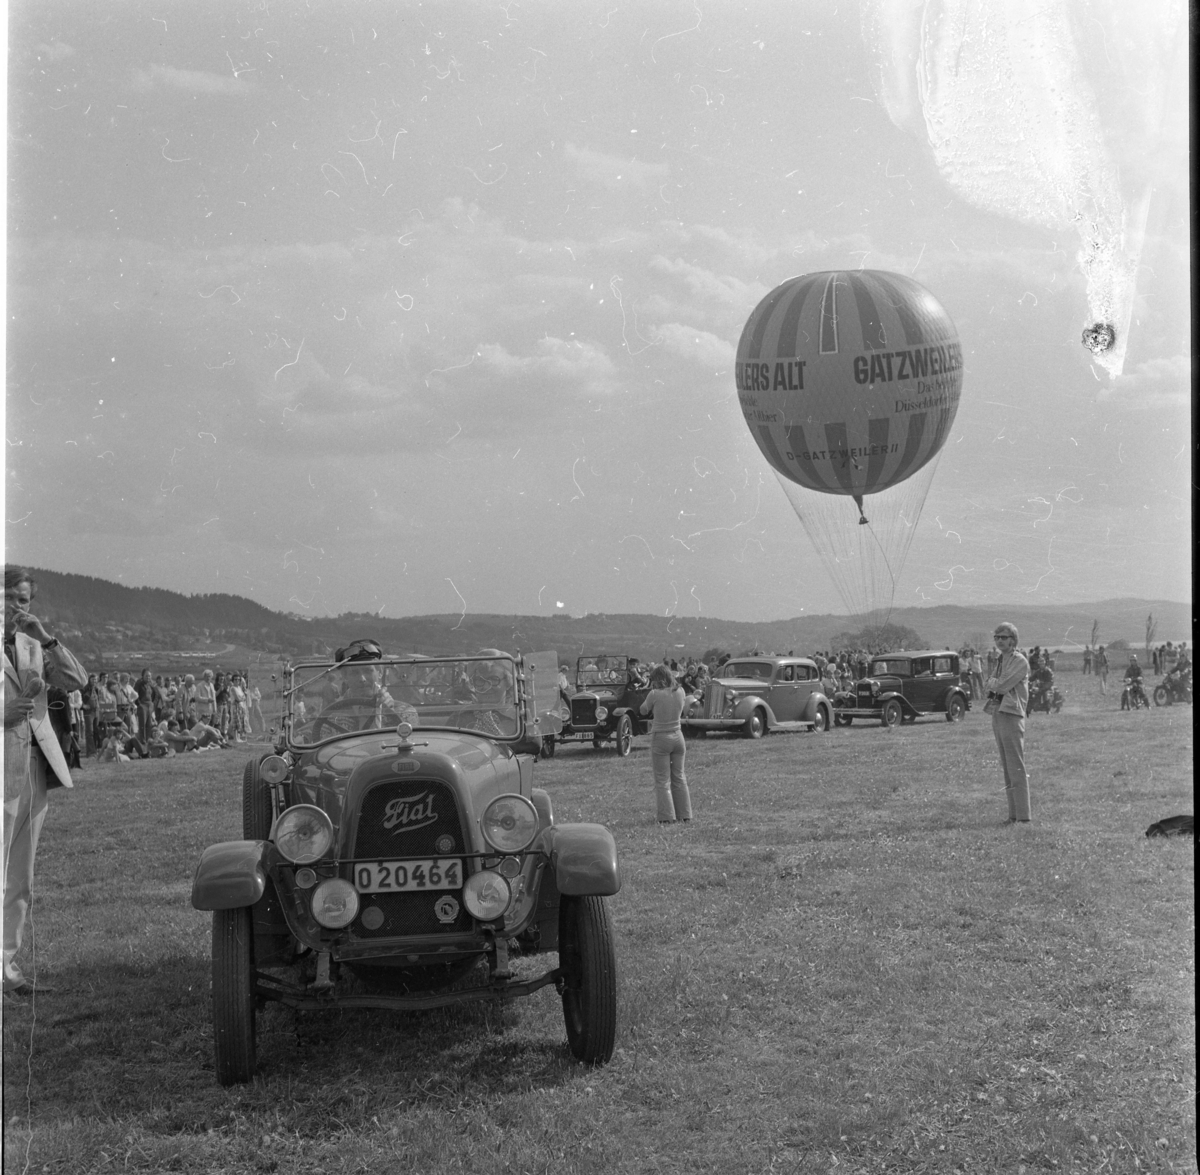 En västtysk gasballong märkt Gatzweilers Alt står beredd att lyfta. Hitom den ett led med veteranbilar, närmast en Fiat cabriolet med registreringsskylt O20464.